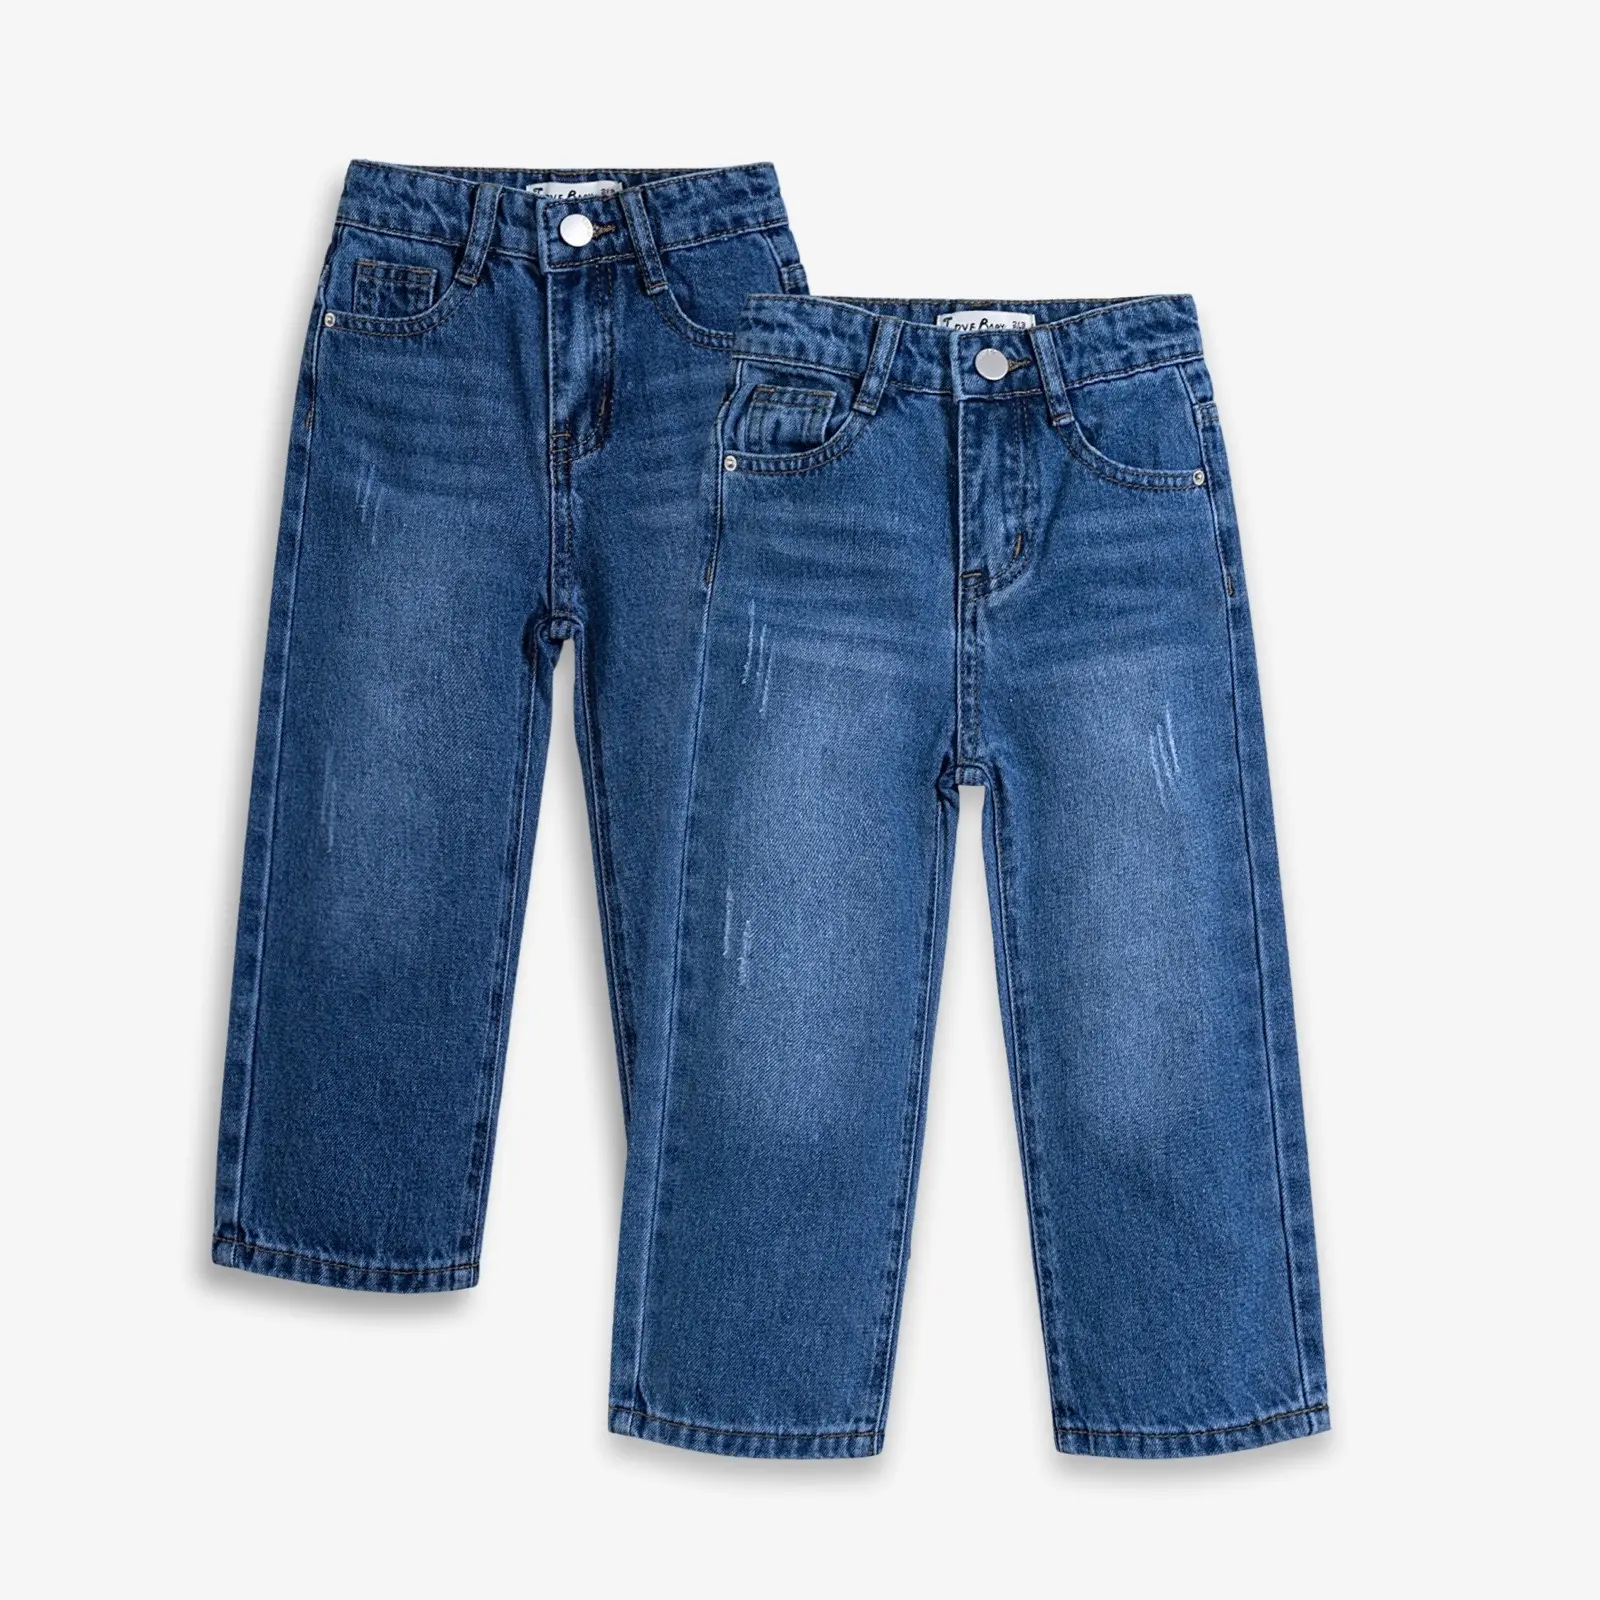 Vendeur de vêtements Vêtements pour filles Jeans en denim délavé léger Pantalon déchiré jambes larges Jeans pour enfants Pantalons pour filles